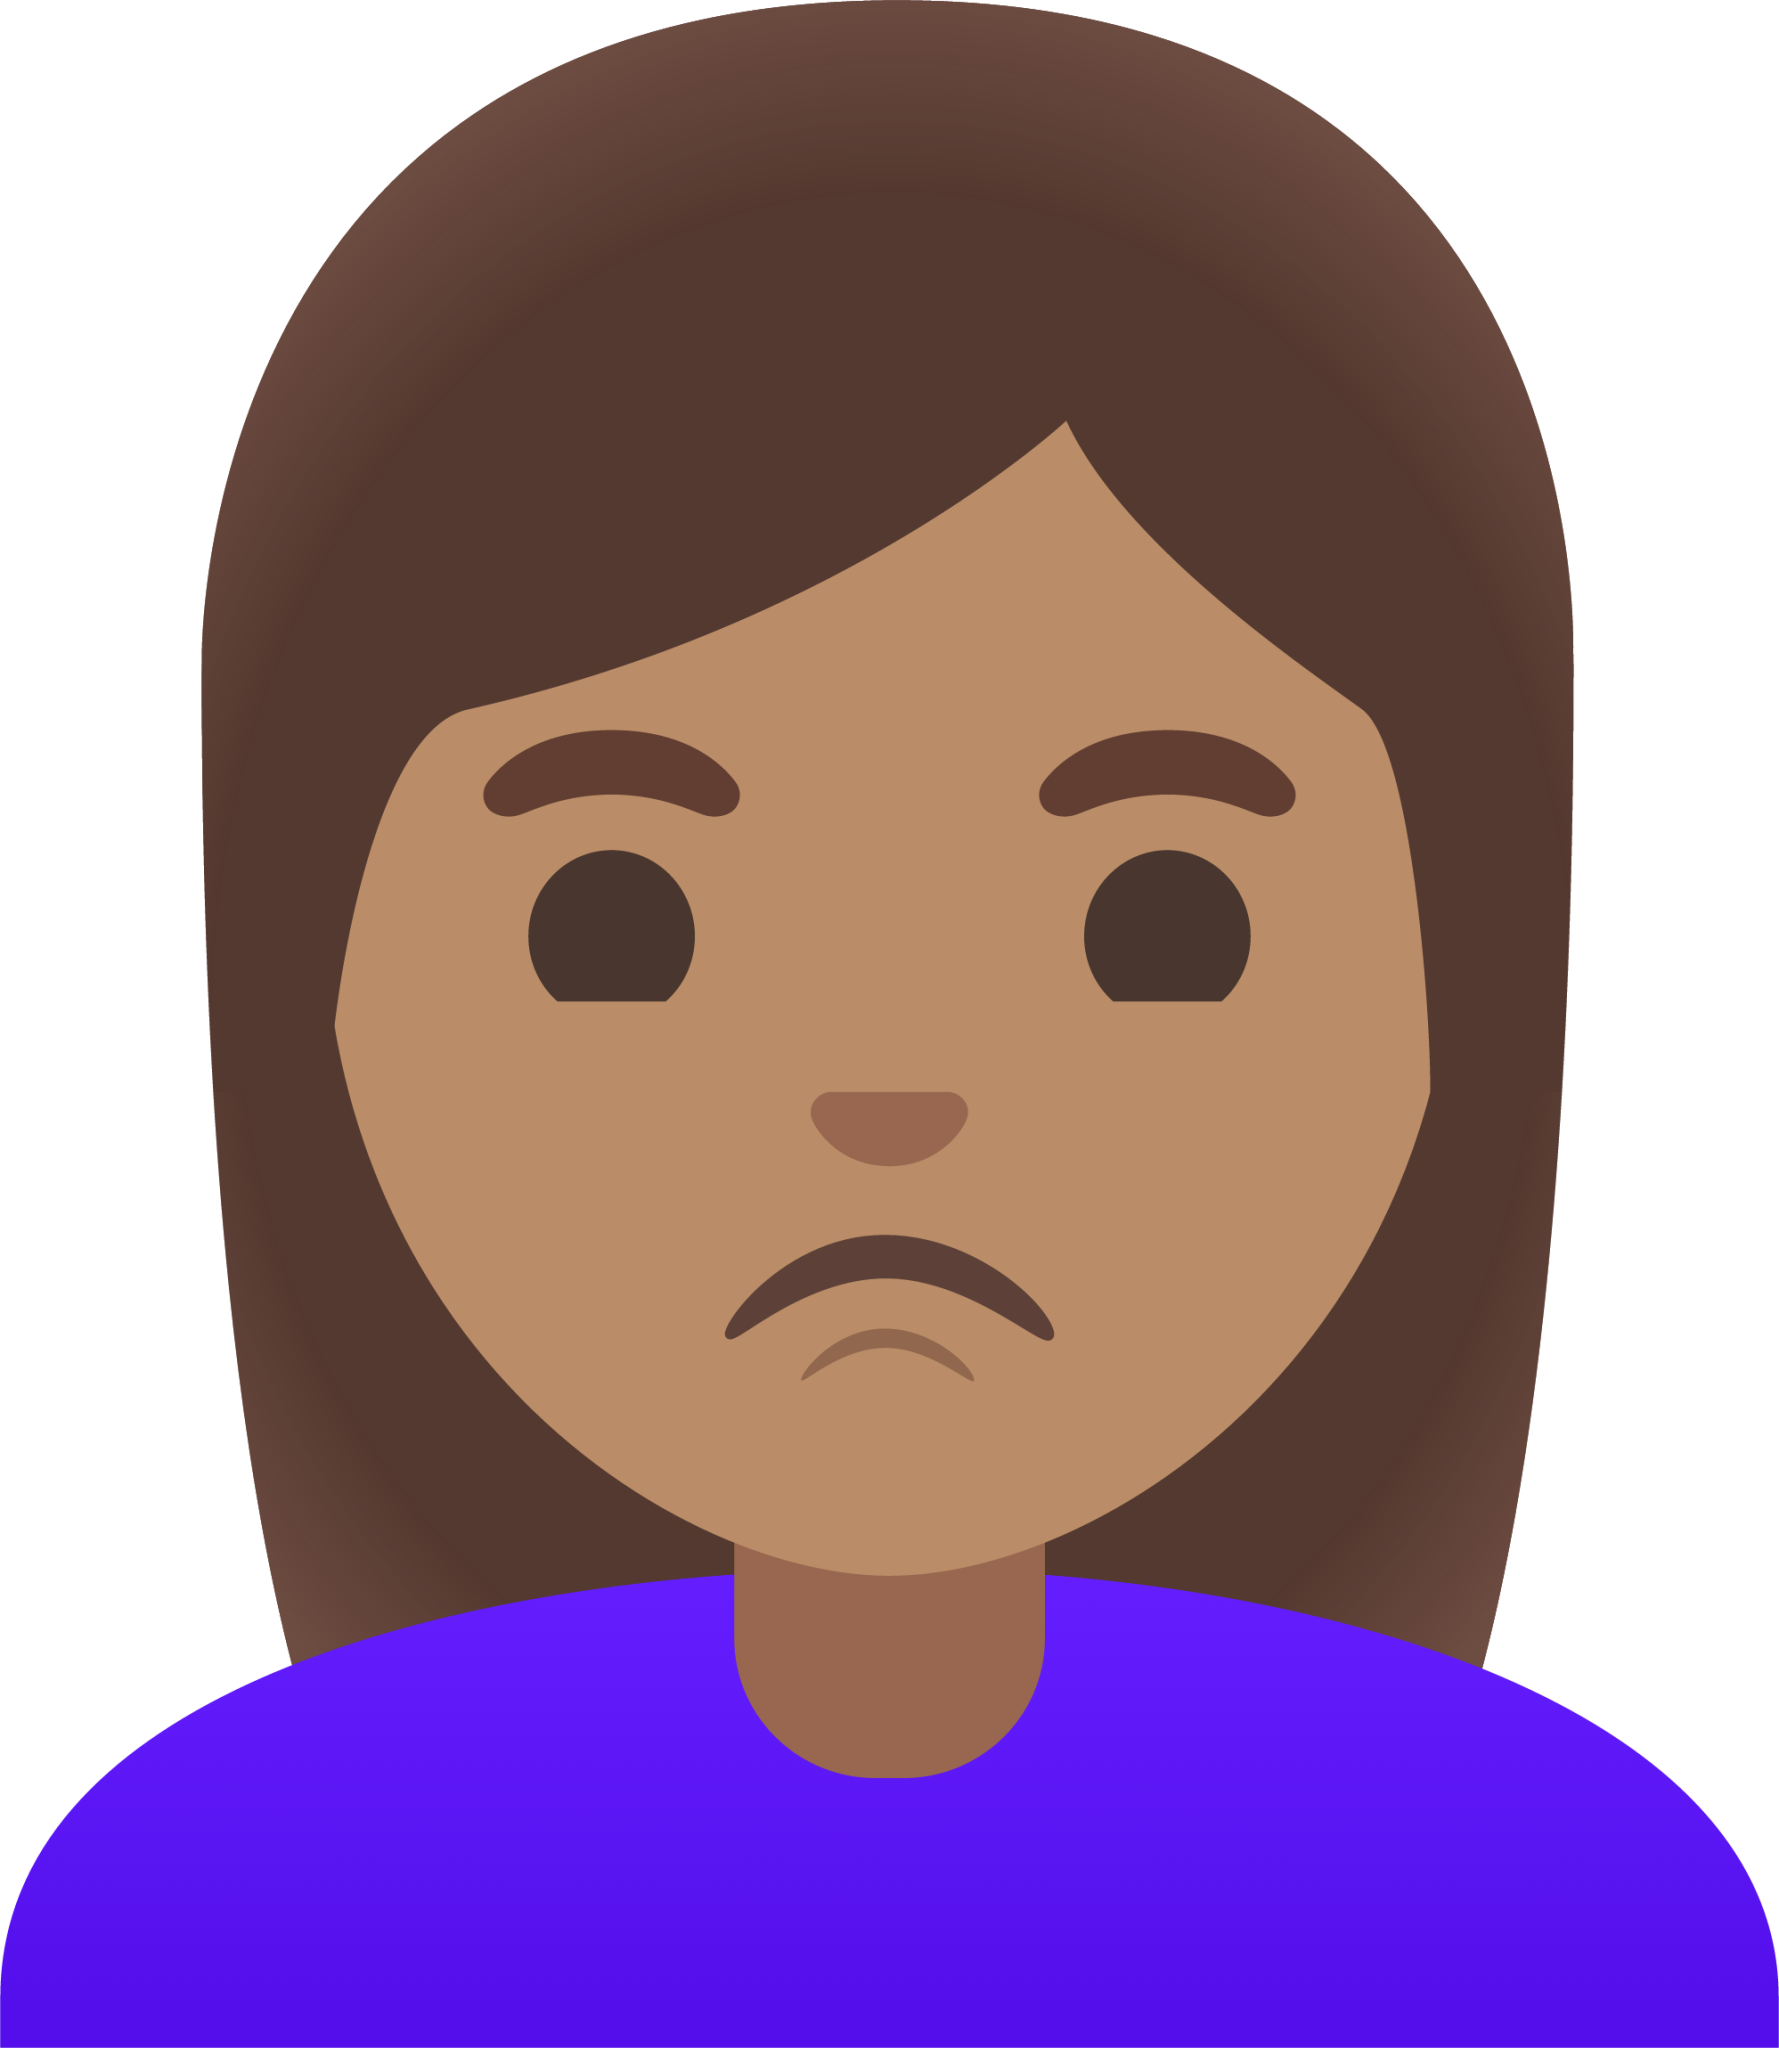 woman pouting: medium skin tone emoji